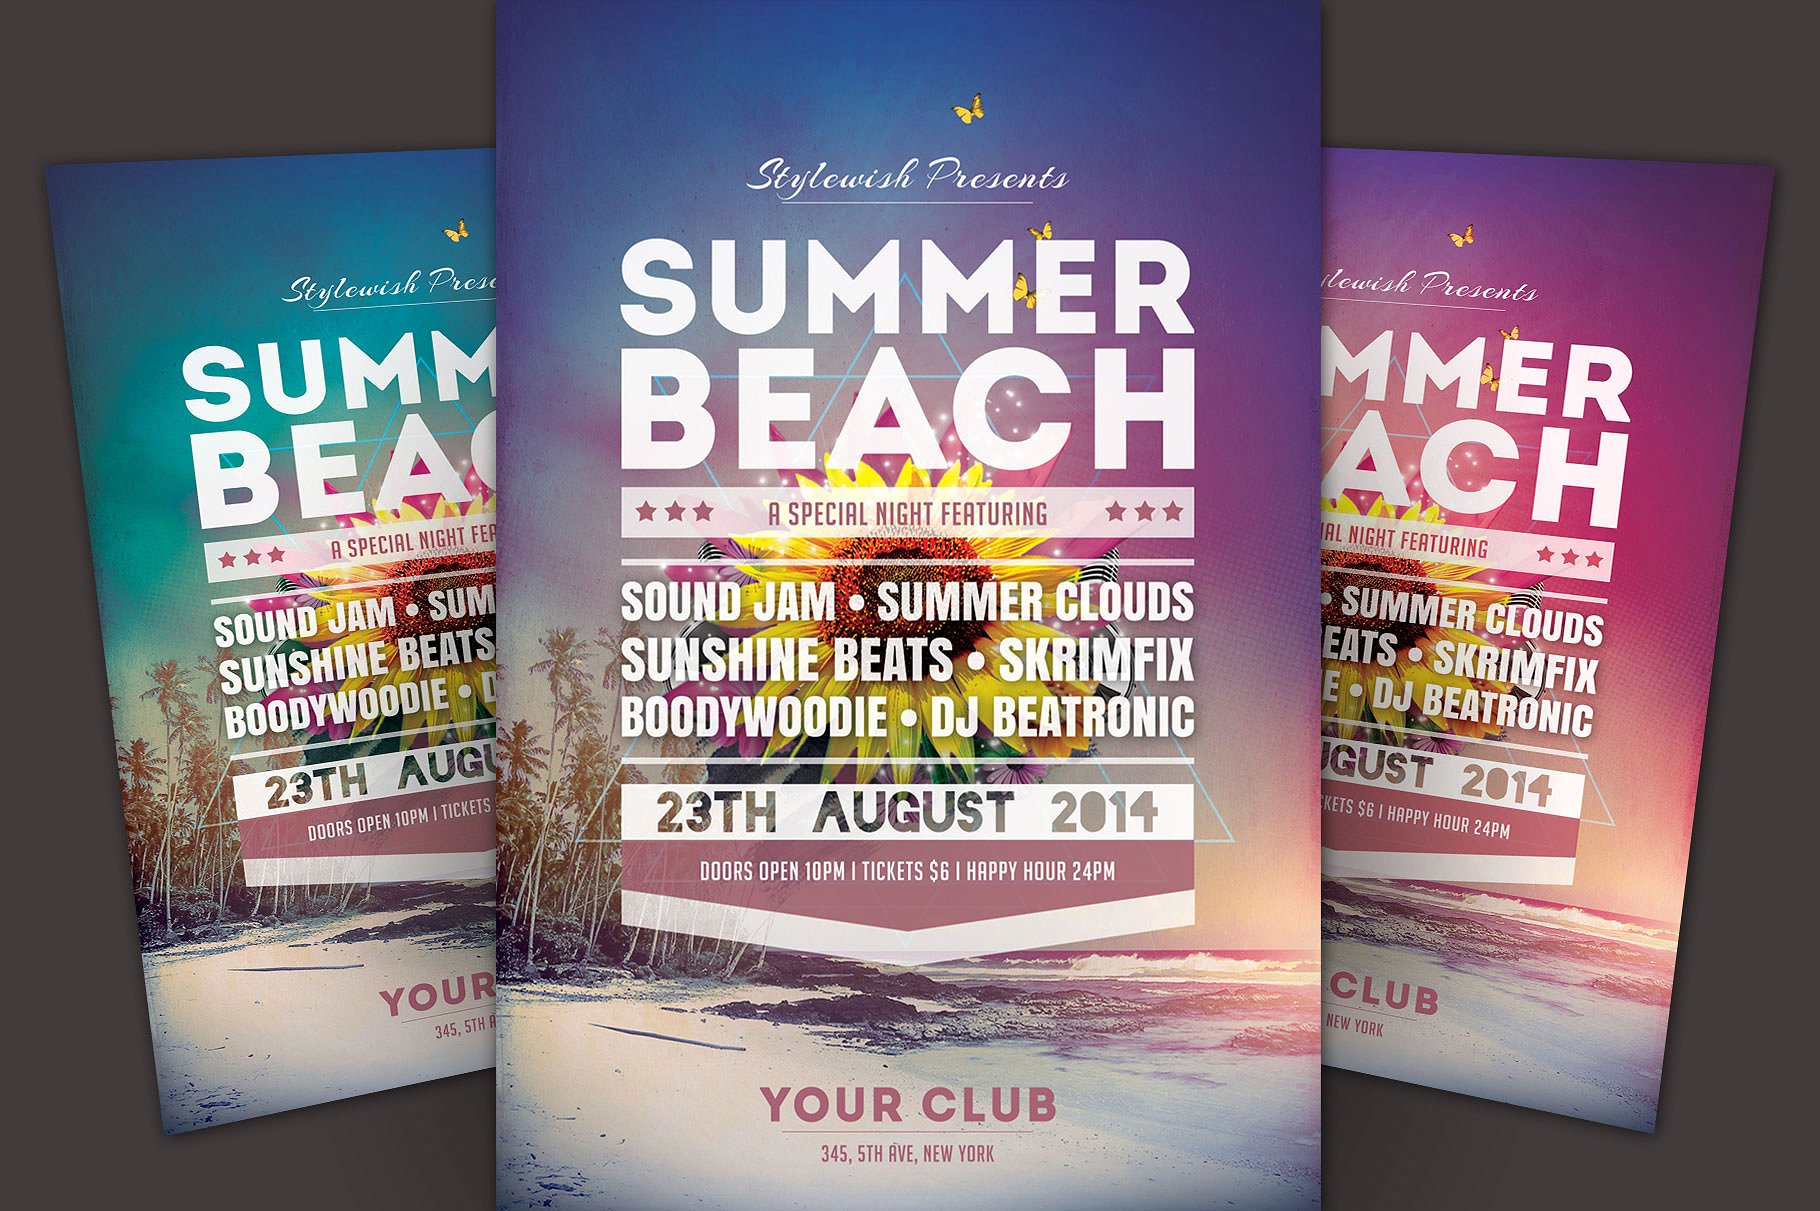 夏季海滩派对活动推广海报模板 Summer Beach Flyer Template插图